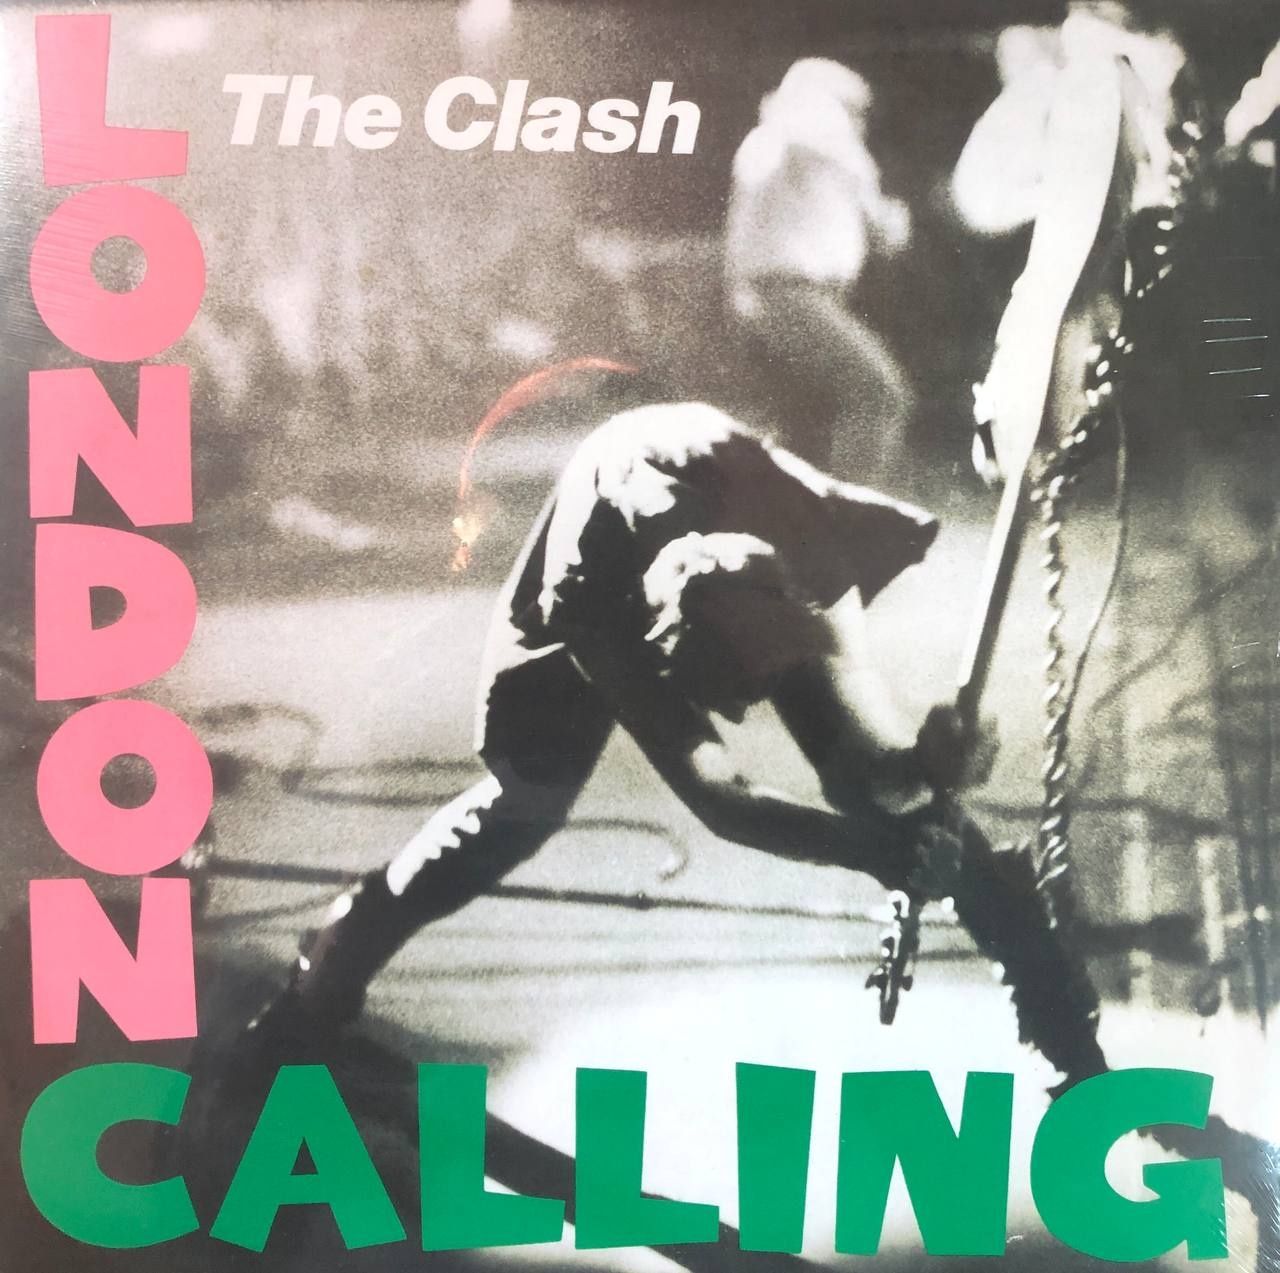 Вініл The Clash - “London Calling”2LP 
Рік випуску 2013 
Виробництво E